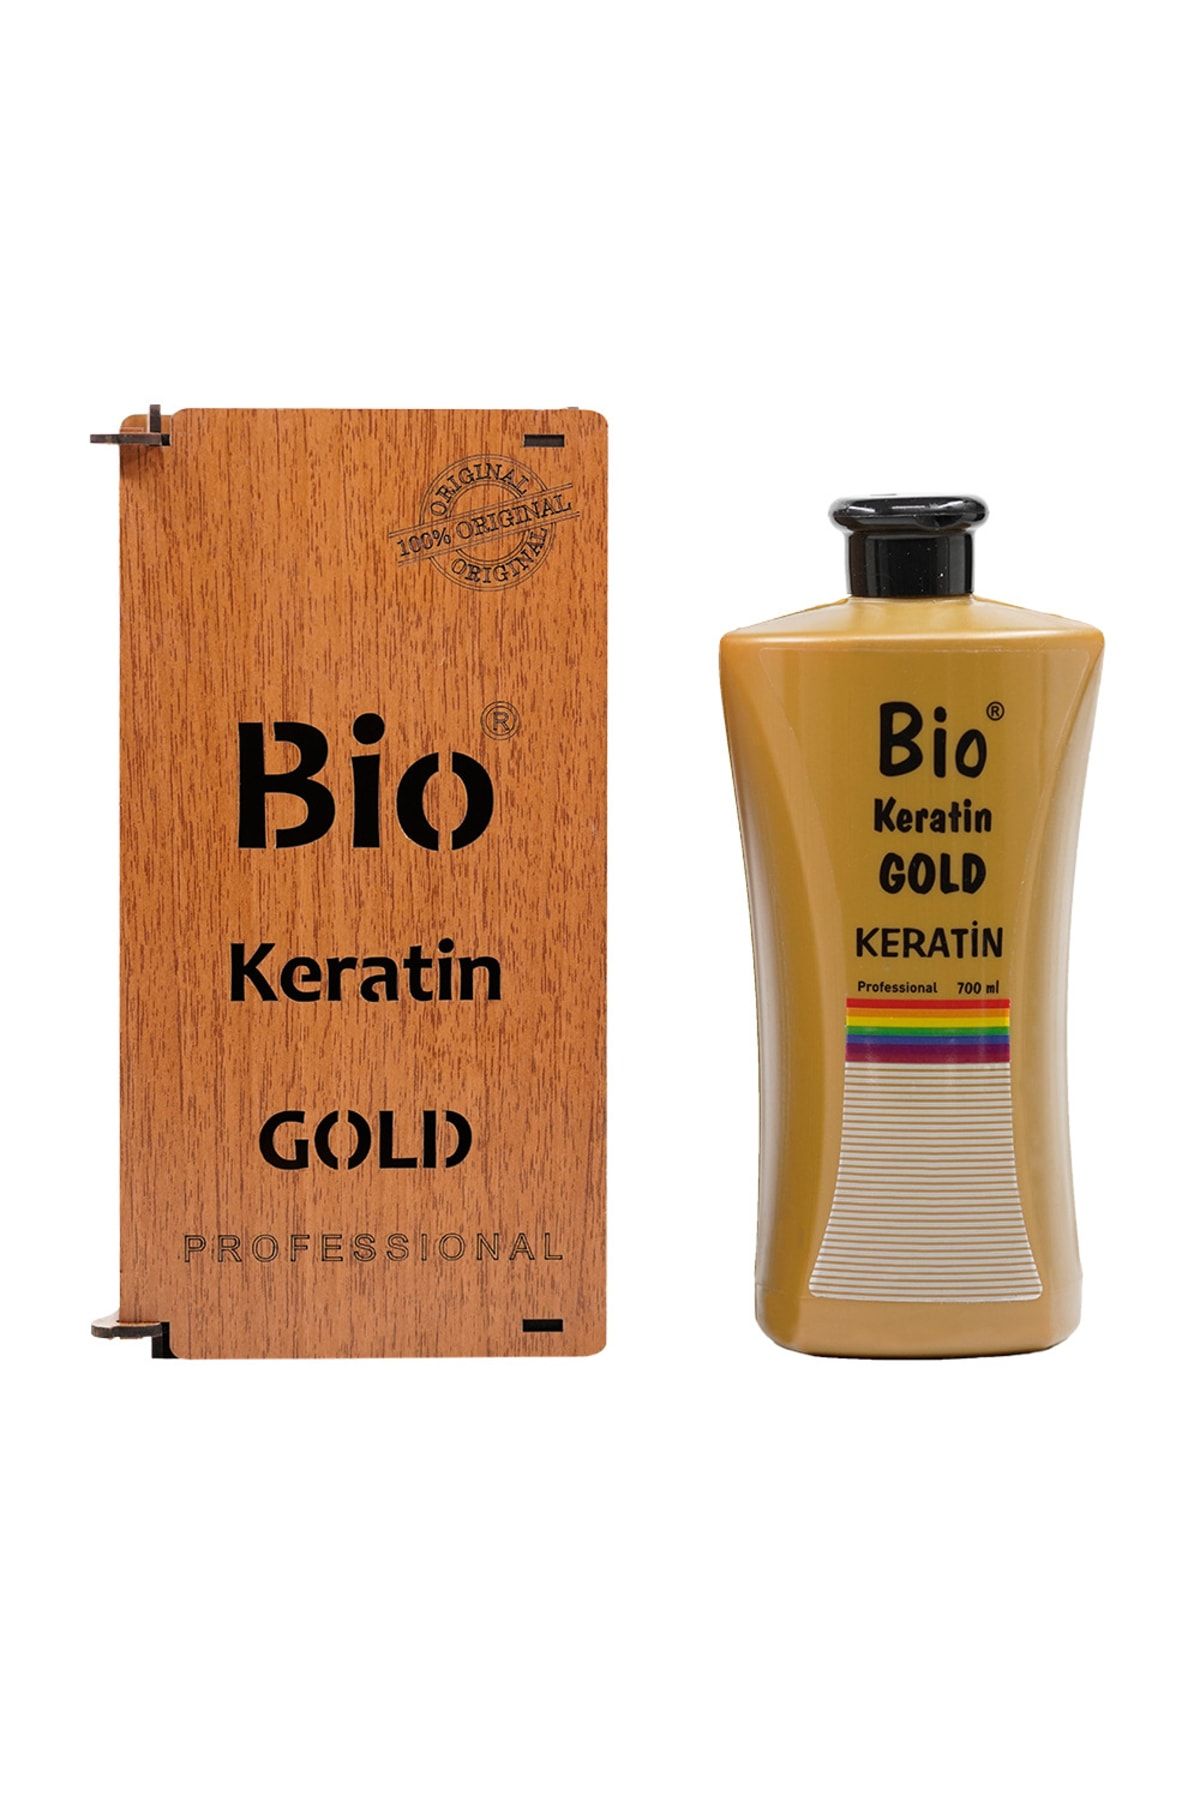 Bio Keratin Gold Gold Özel Brezilya Fönü Keratini 700 ml 8690490106638